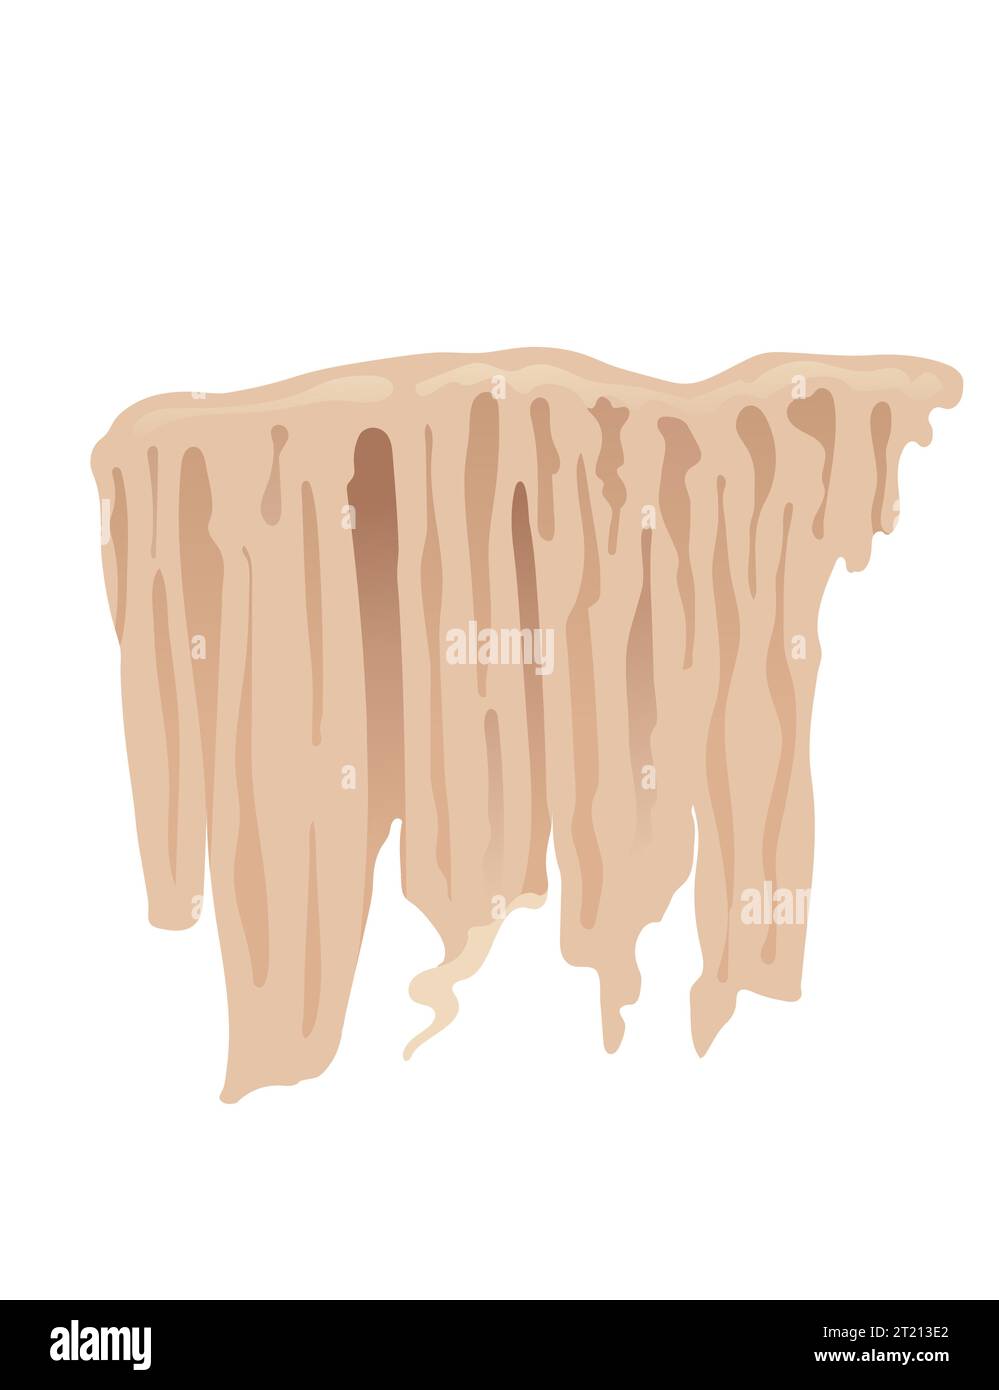 Colonne minérale de stalactite de pierre de grotte formation de géologie de croissance naturelle illustration de vecteur isolé sur fond blanc Illustration de Vecteur